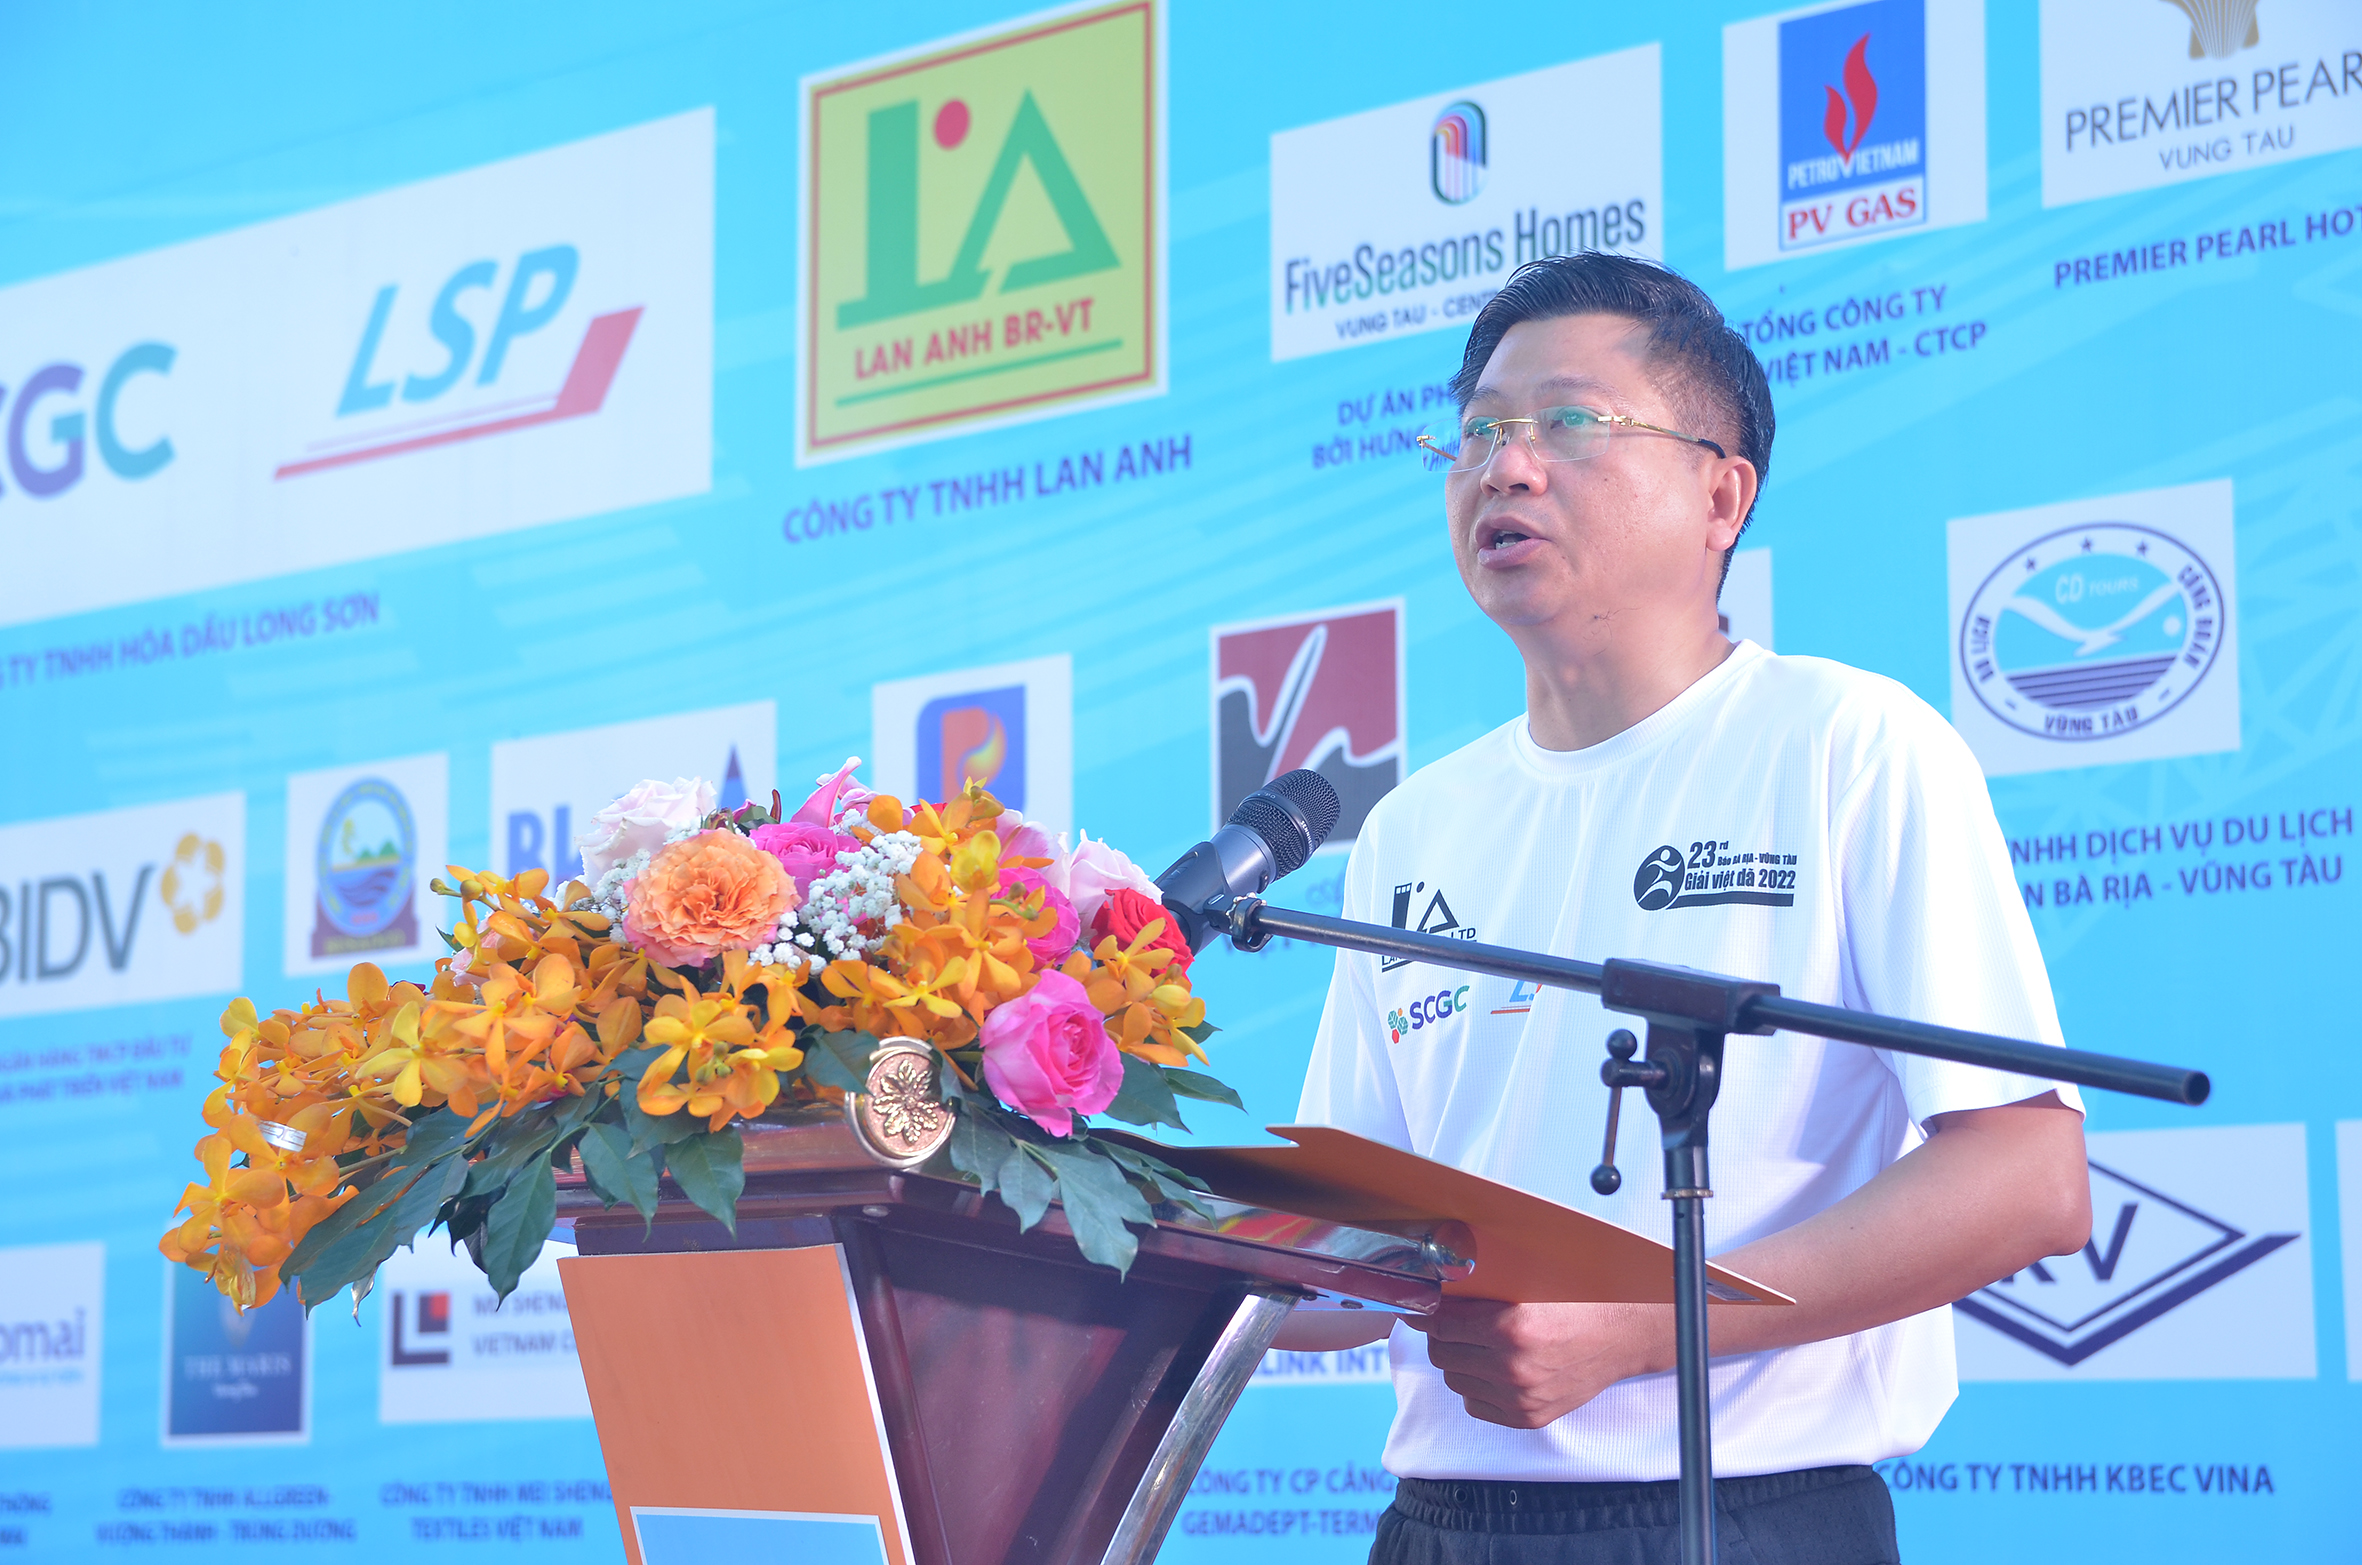  Ông Trần Văn Tuấn, Phó Chủ tịch UBND tỉnh phát biểu tại lễ khai mạc.